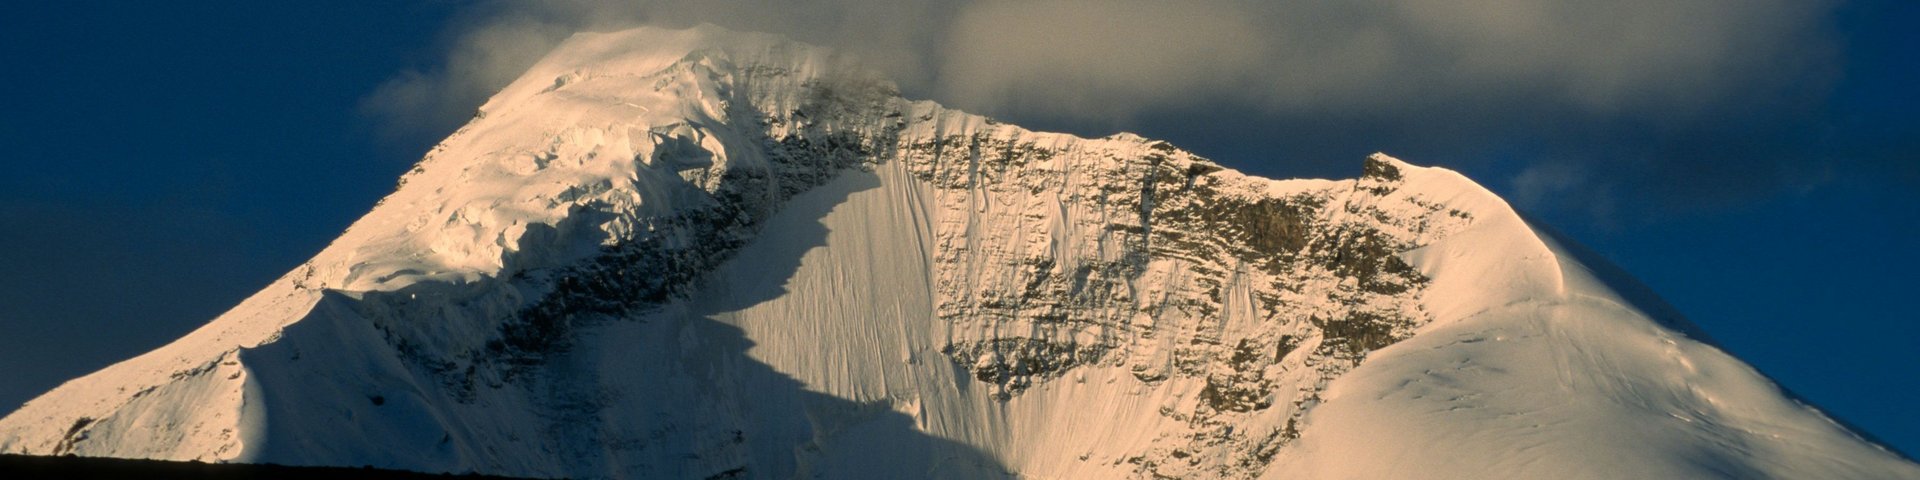 Besteigung eines schneebedeckten 6000er Gipfels in Ladakh